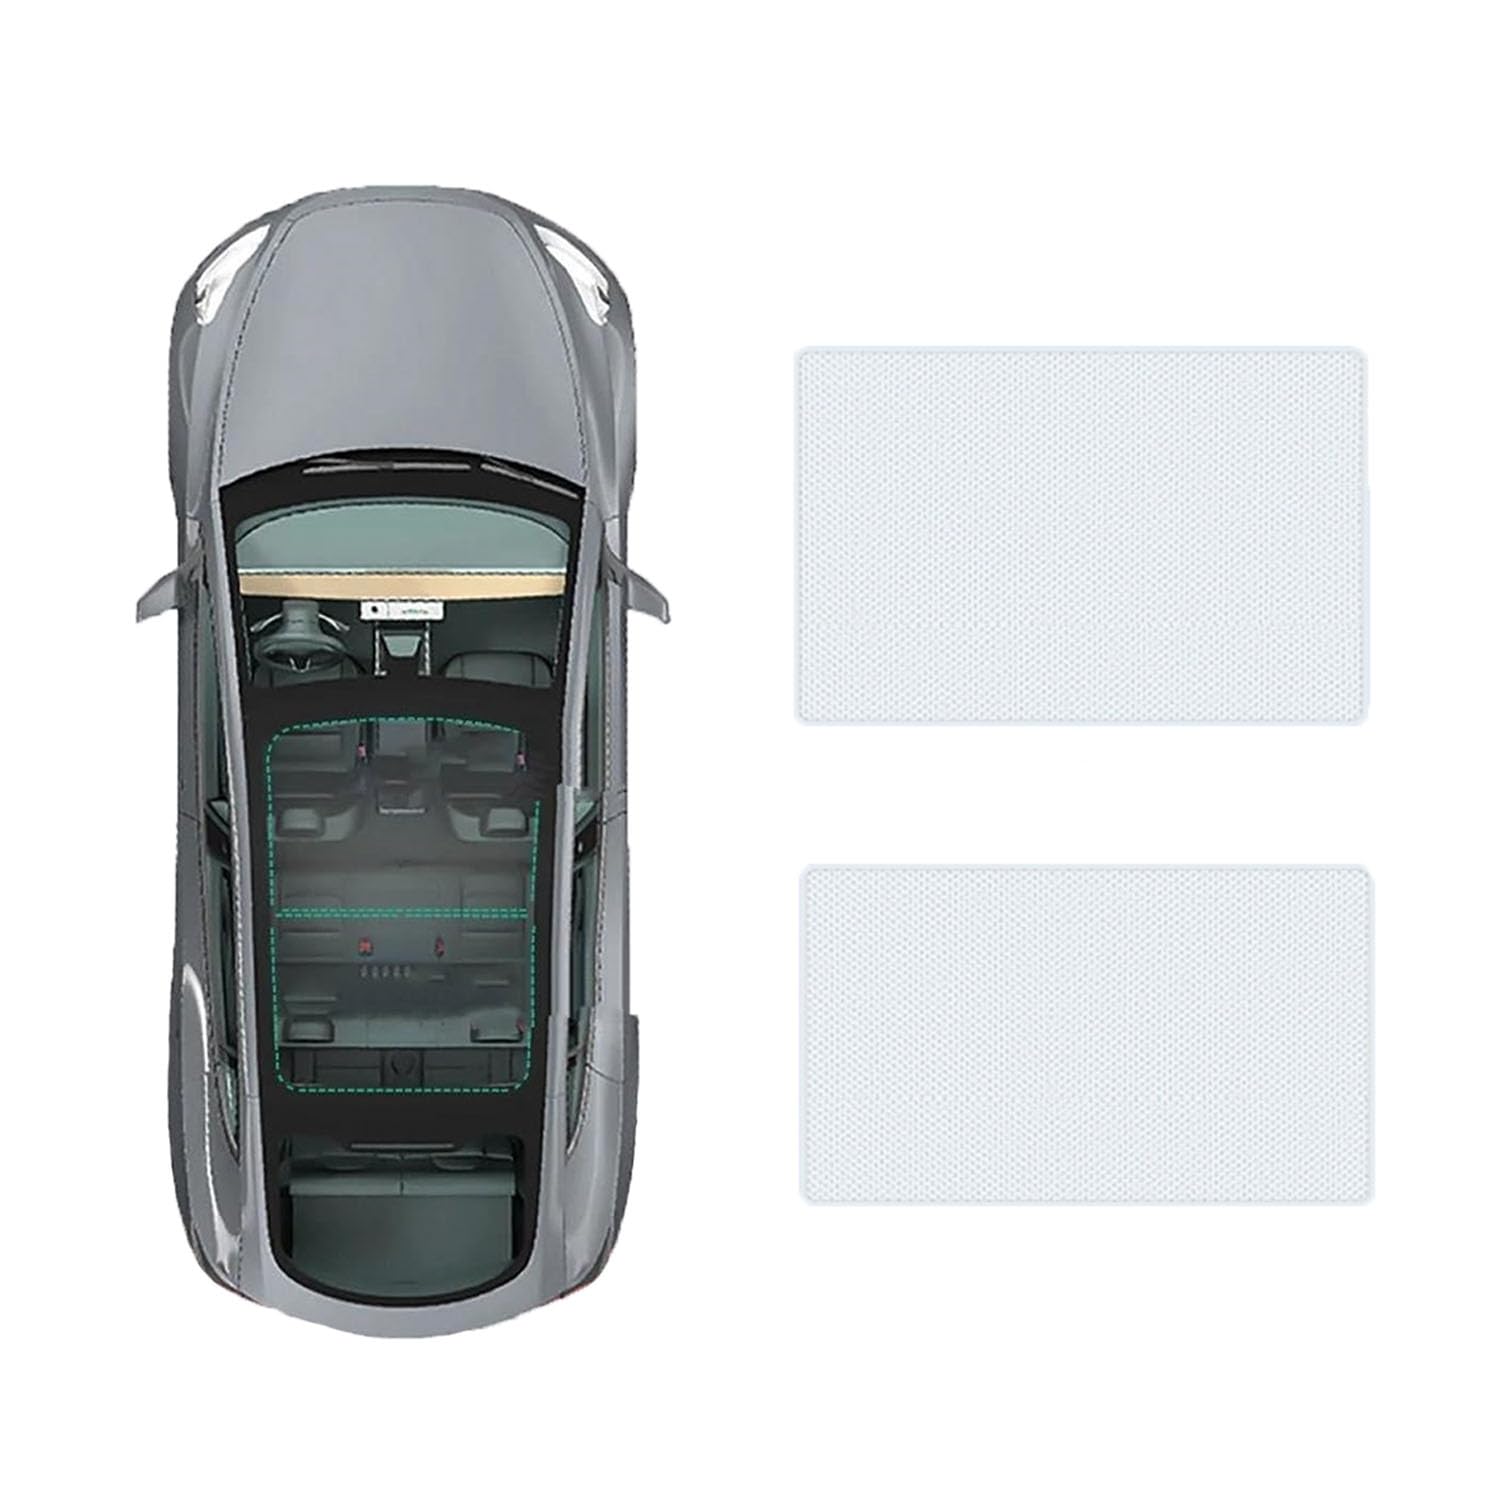 Für Hyundai Sonata 2020- Auto-Schiebedach-Beschattung,Dach Wärme Isolierung Anti-UV Visier Auto Zubehör,A-Gray white regular Style von ANRAM